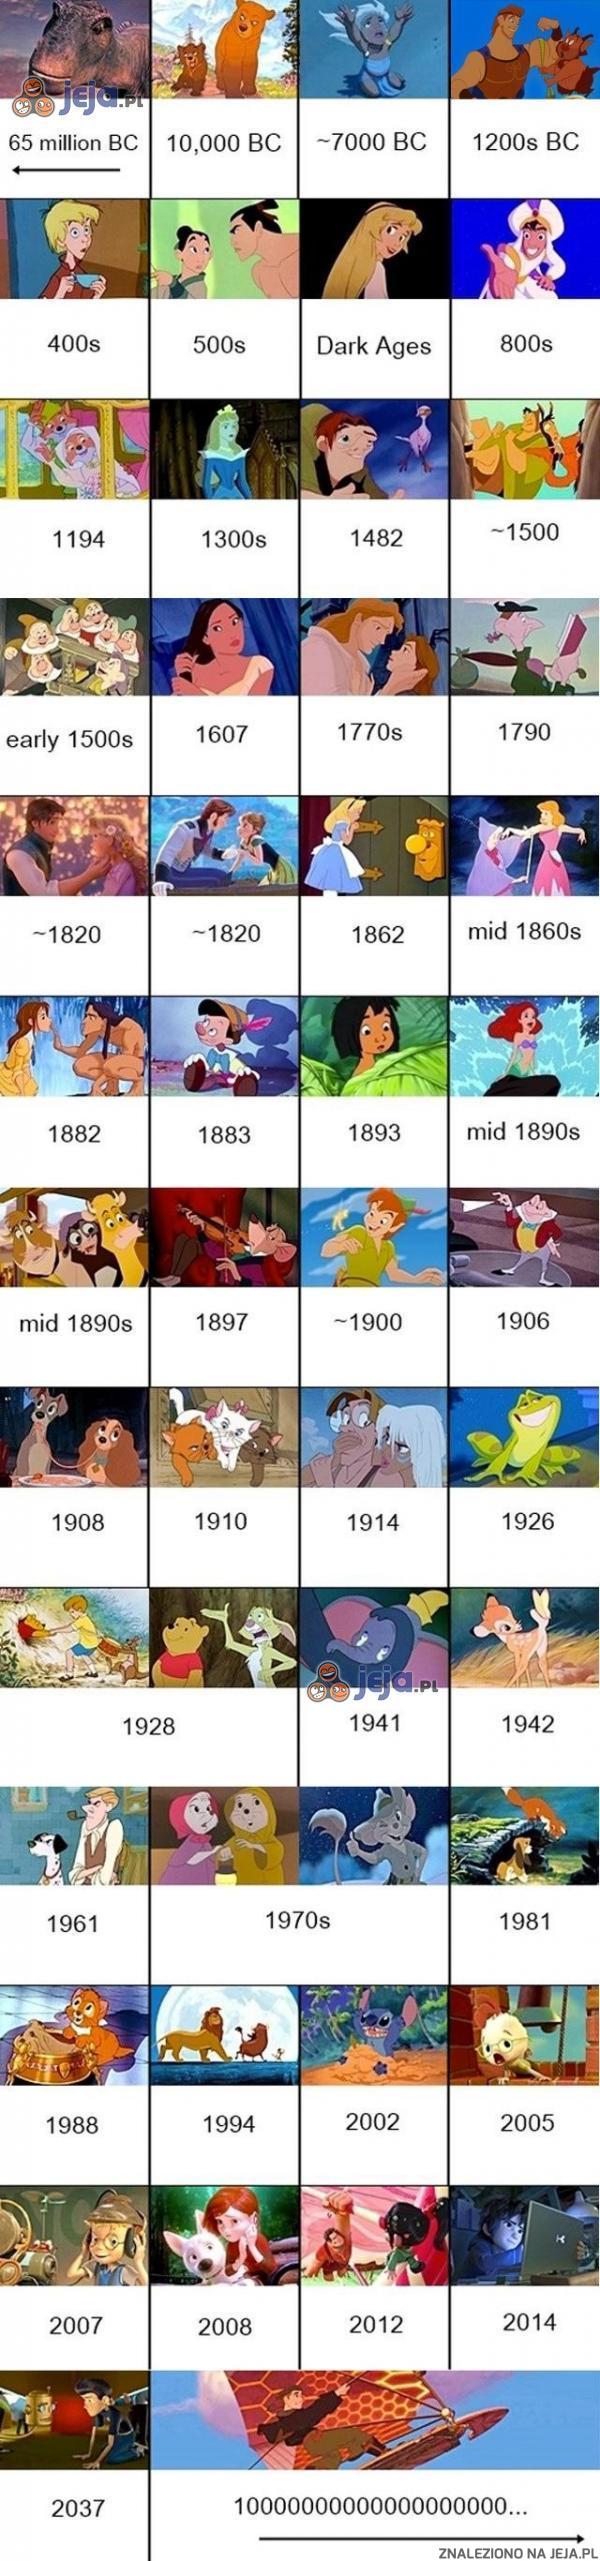 Wszystkie animacje Disneya chronologicznie